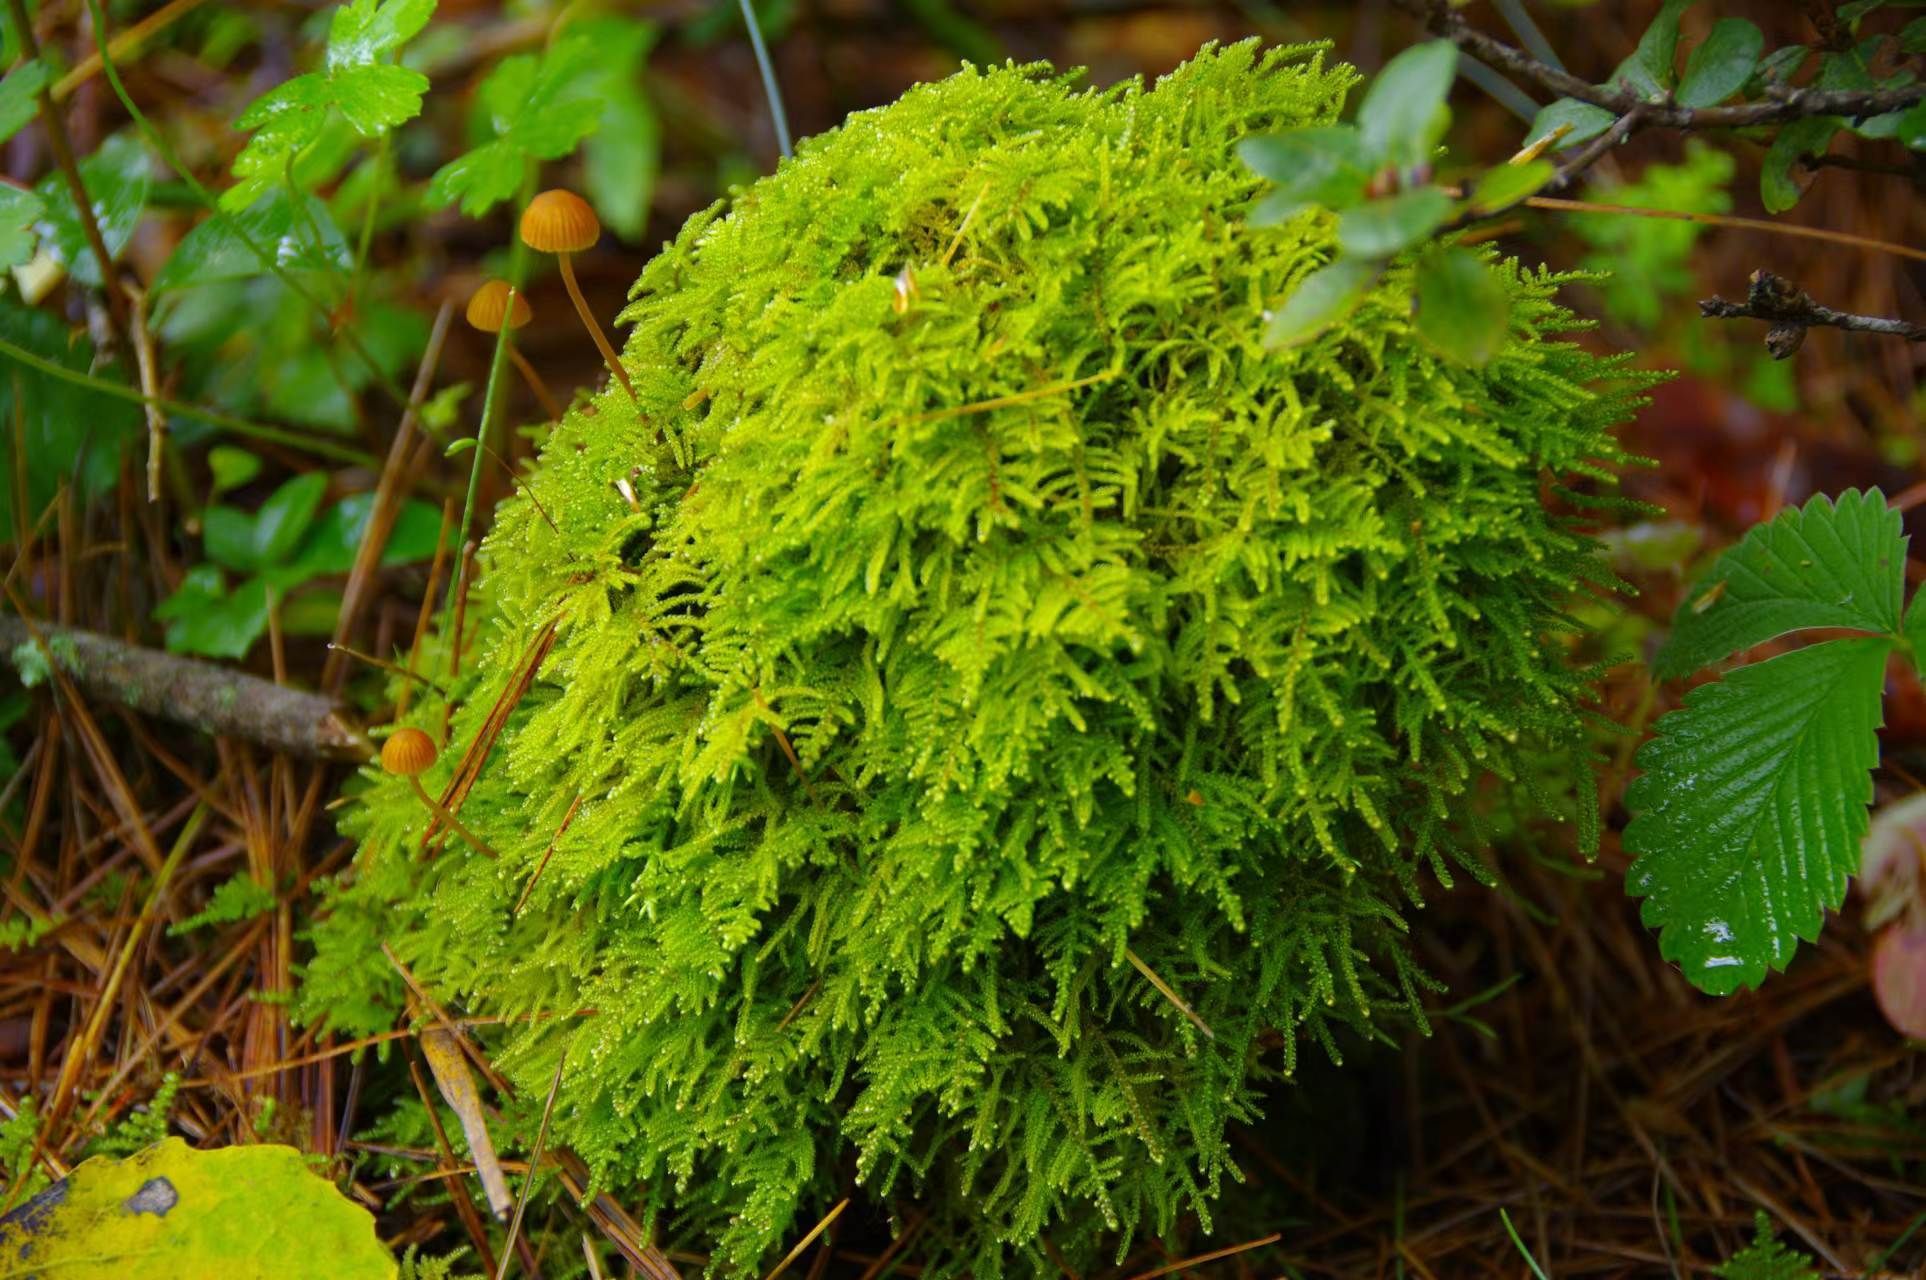 苔藓植物喜欢潮湿的环境,一般生长在裸露的石壁上,或潮湿的森林和沼泽